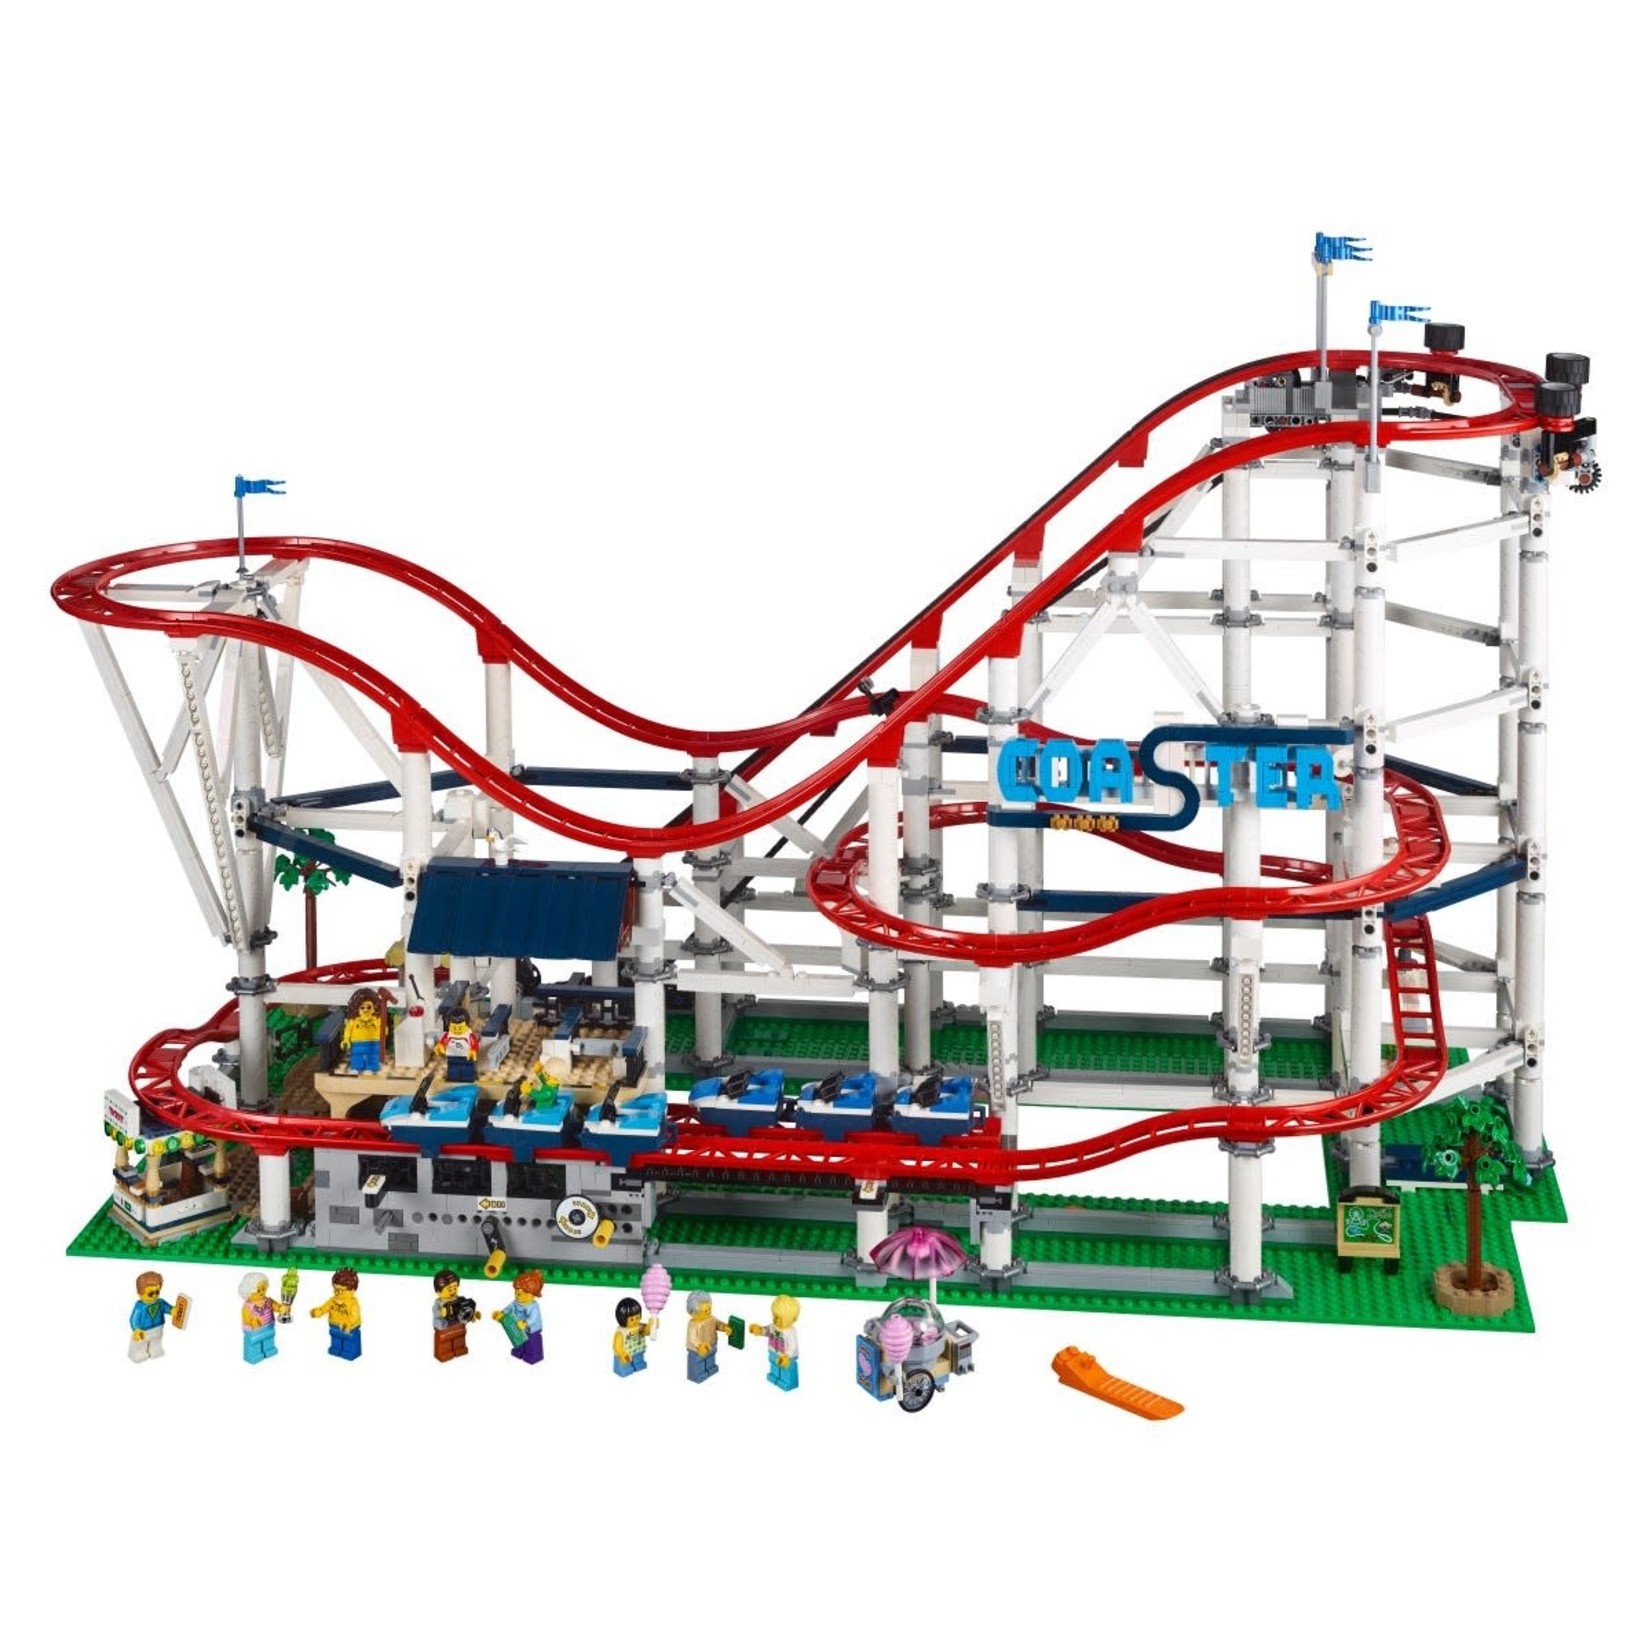 LEGO LEGO Roller Coaster 10261